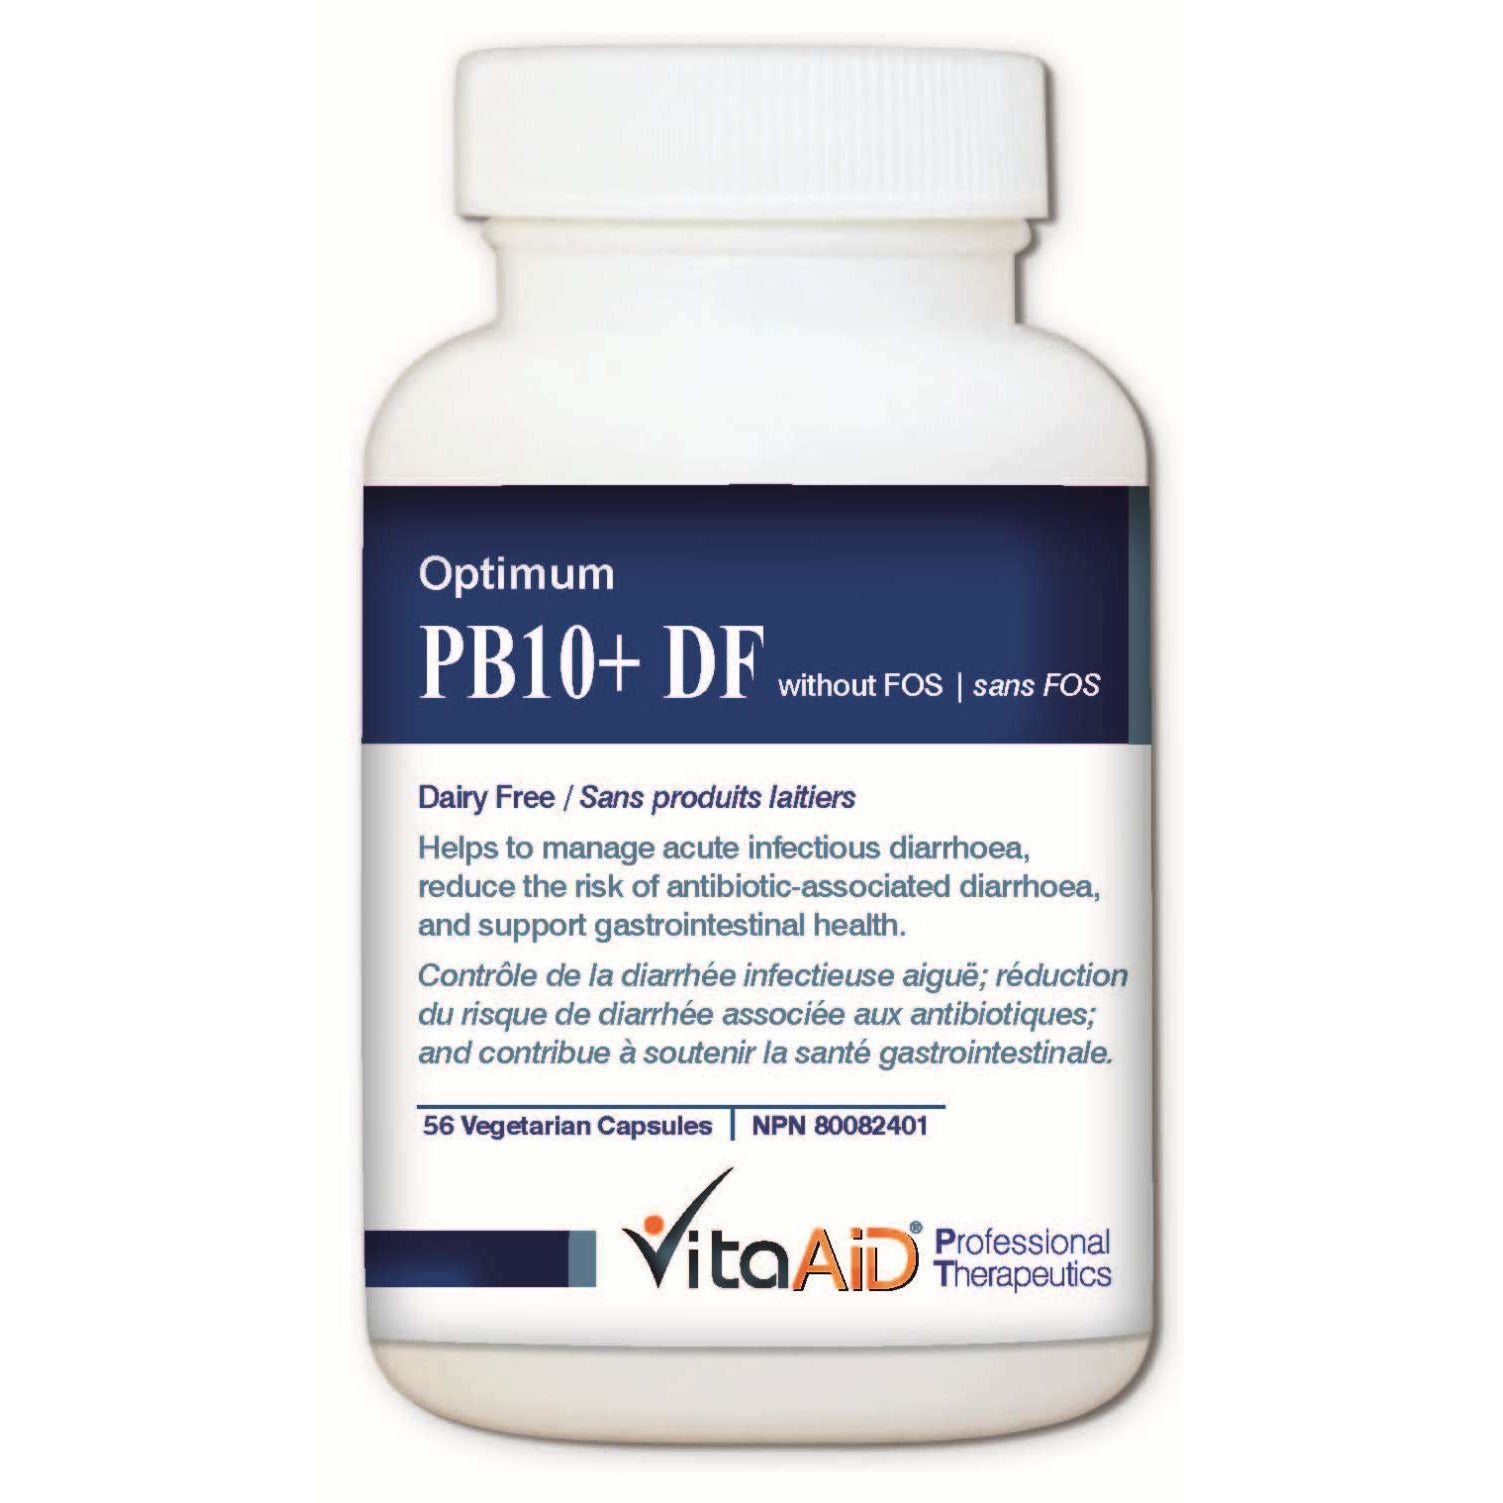 Optimum-PB10 DF (without FOS) Multi-Strain/Dairy Free Probiotic Formula 56 veg caps - iwellnessbox